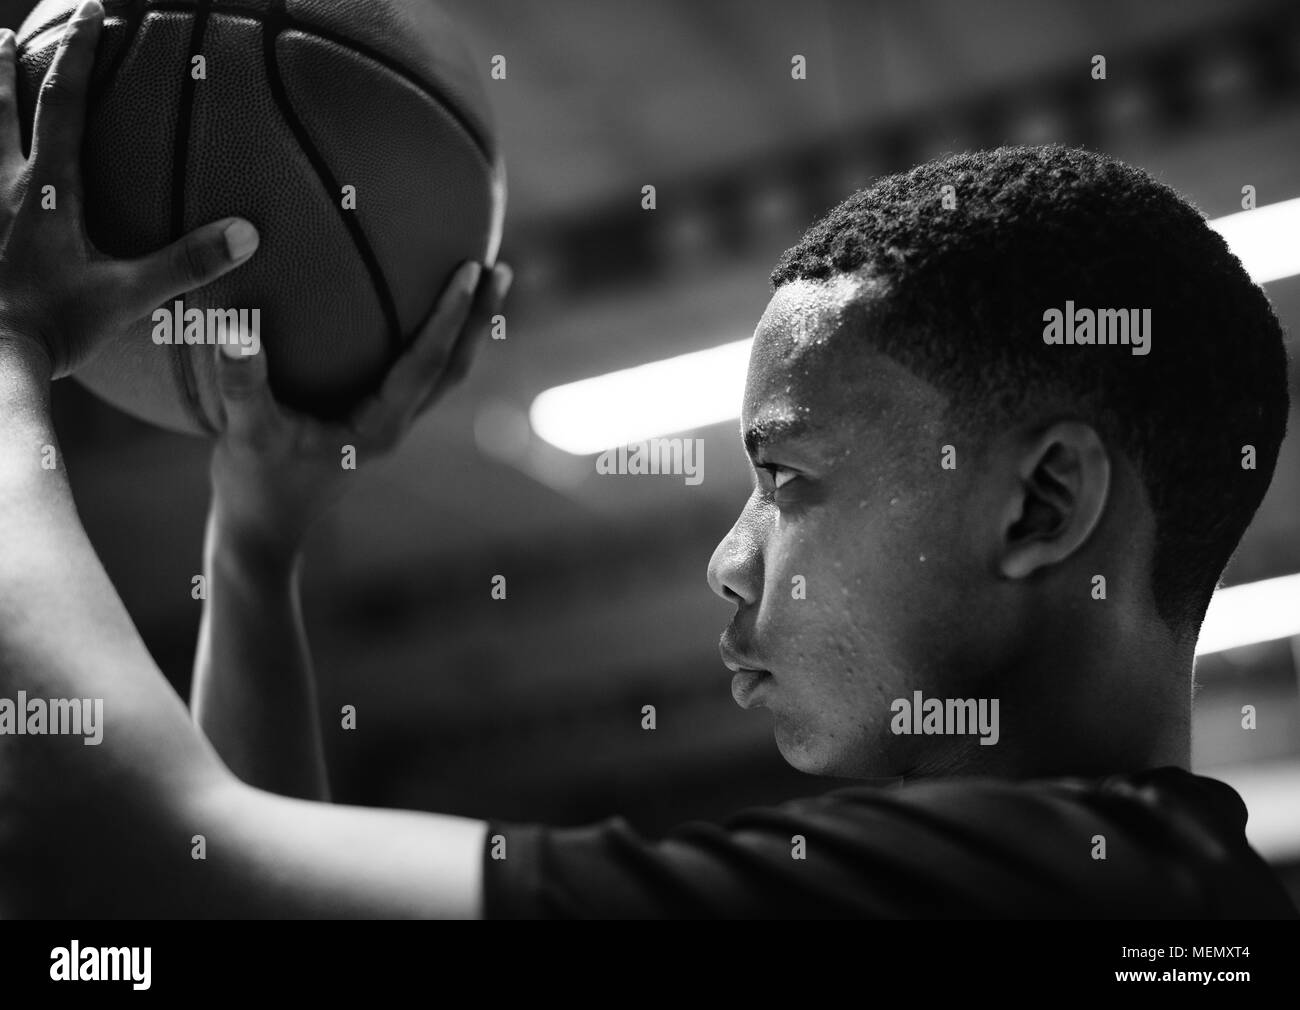 Adolescente americano africano concentrado en jugar baloncesto Foto de stock